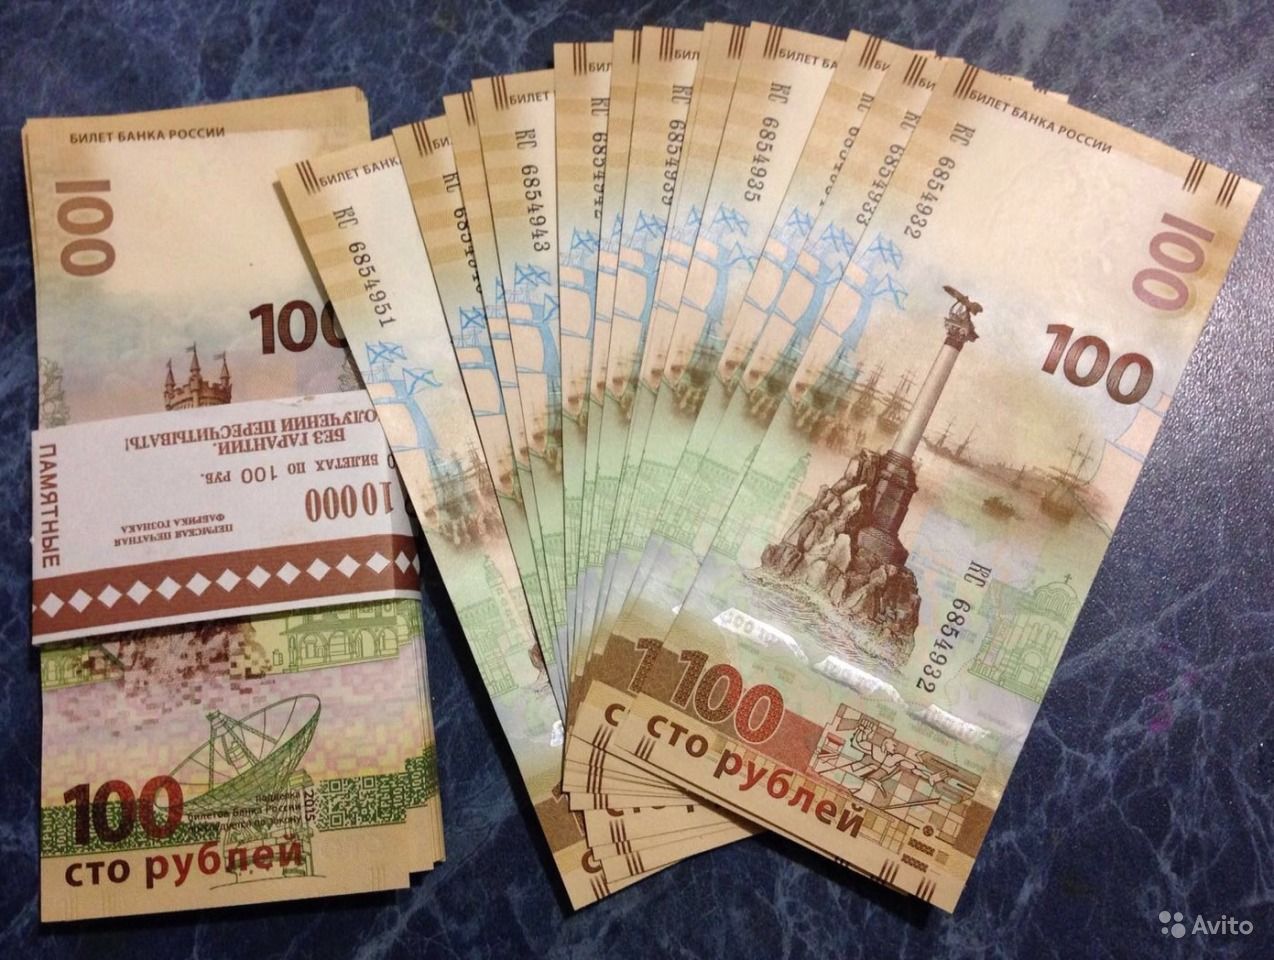 Купить 100 рублей на авито